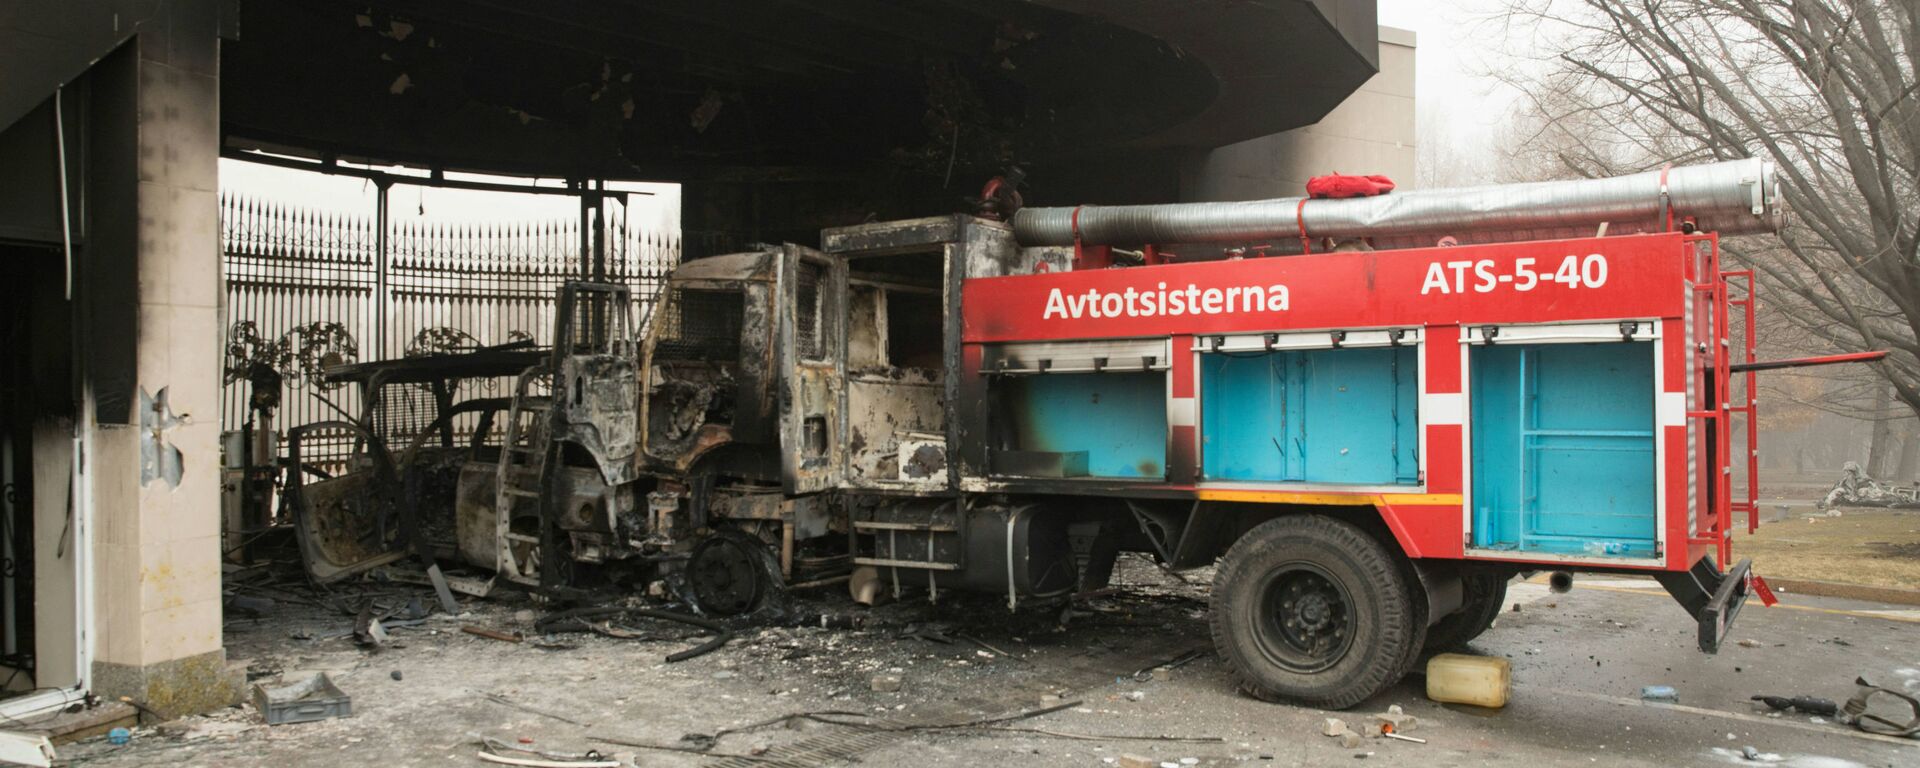 Сгоревшая пожарная машина изображена перед воротами административного здания в центре Алматы 6 января 2022 года - Sputnik Казахстан, 1920, 07.01.2022